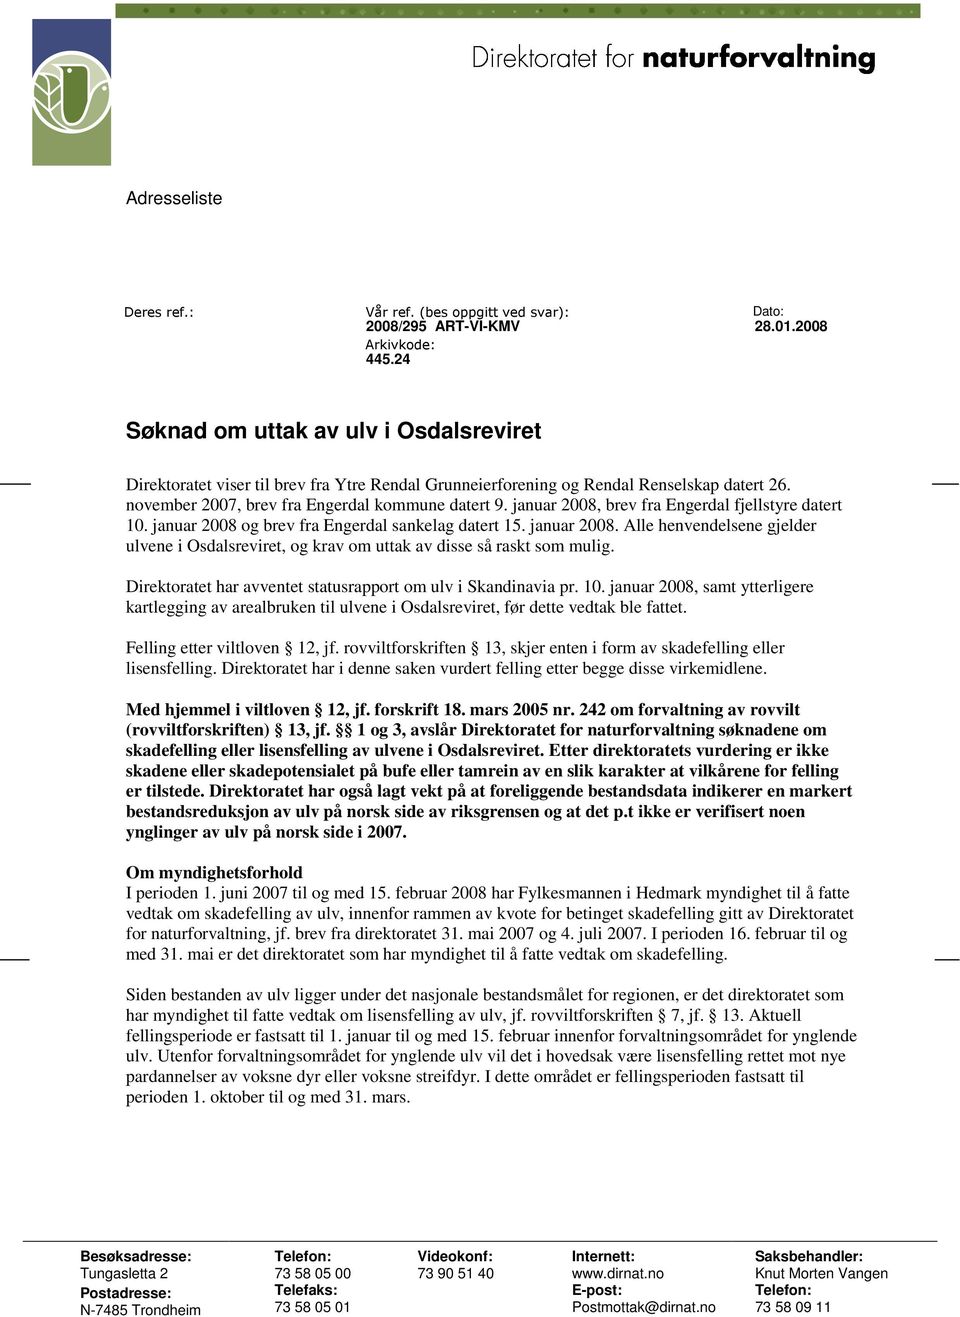 januar 2008, brev fra Engerdal fjellstyre datert 10. januar 2008 og brev fra Engerdal sankelag datert 15. januar 2008. Alle henvendelsene gjelder ulvene i Osdalsreviret, og krav om uttak av disse så raskt som mulig.